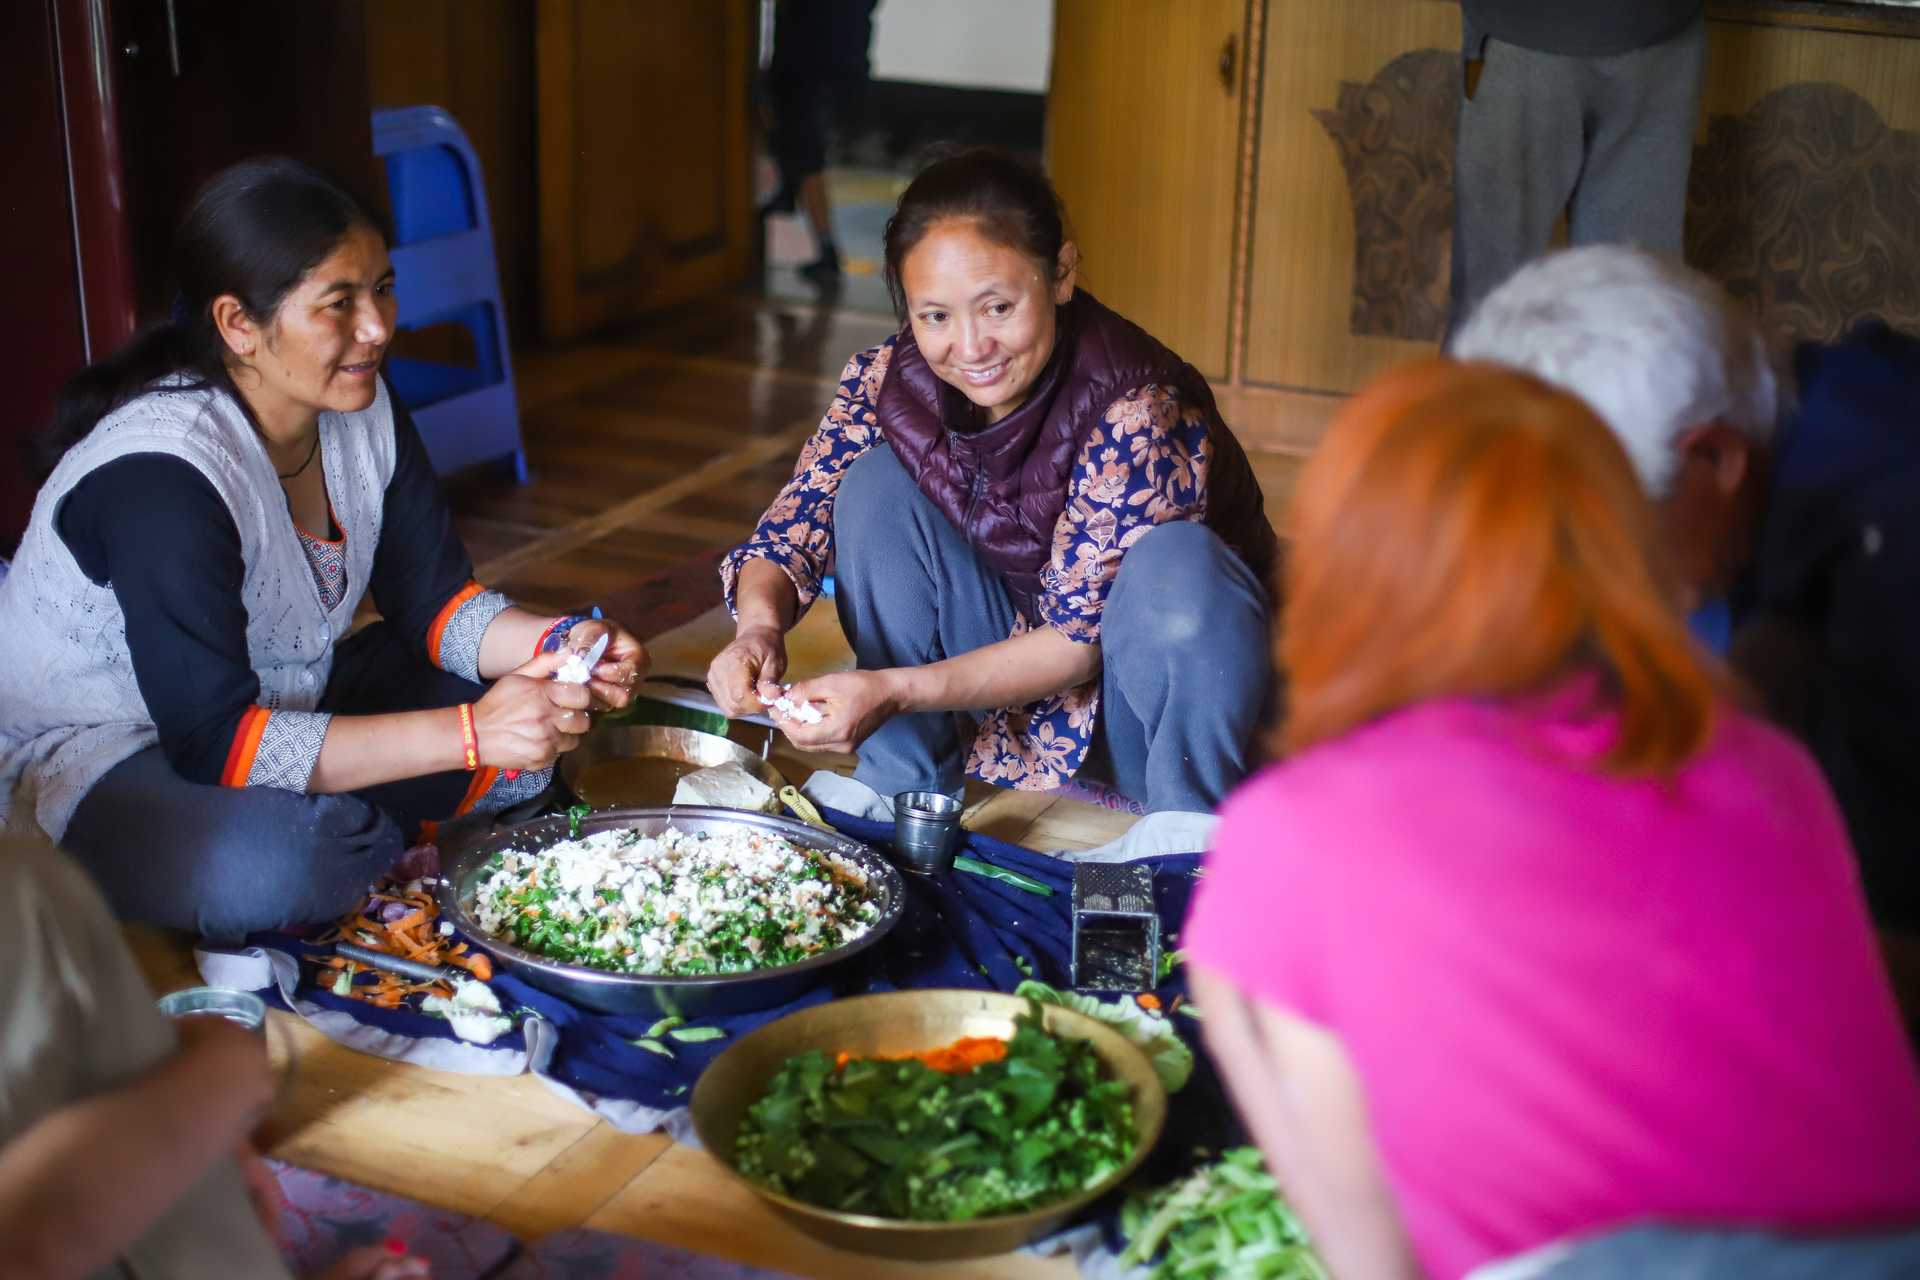 Préparation du repas avec les voyageurs au Ladakh en Inde Himalayenne